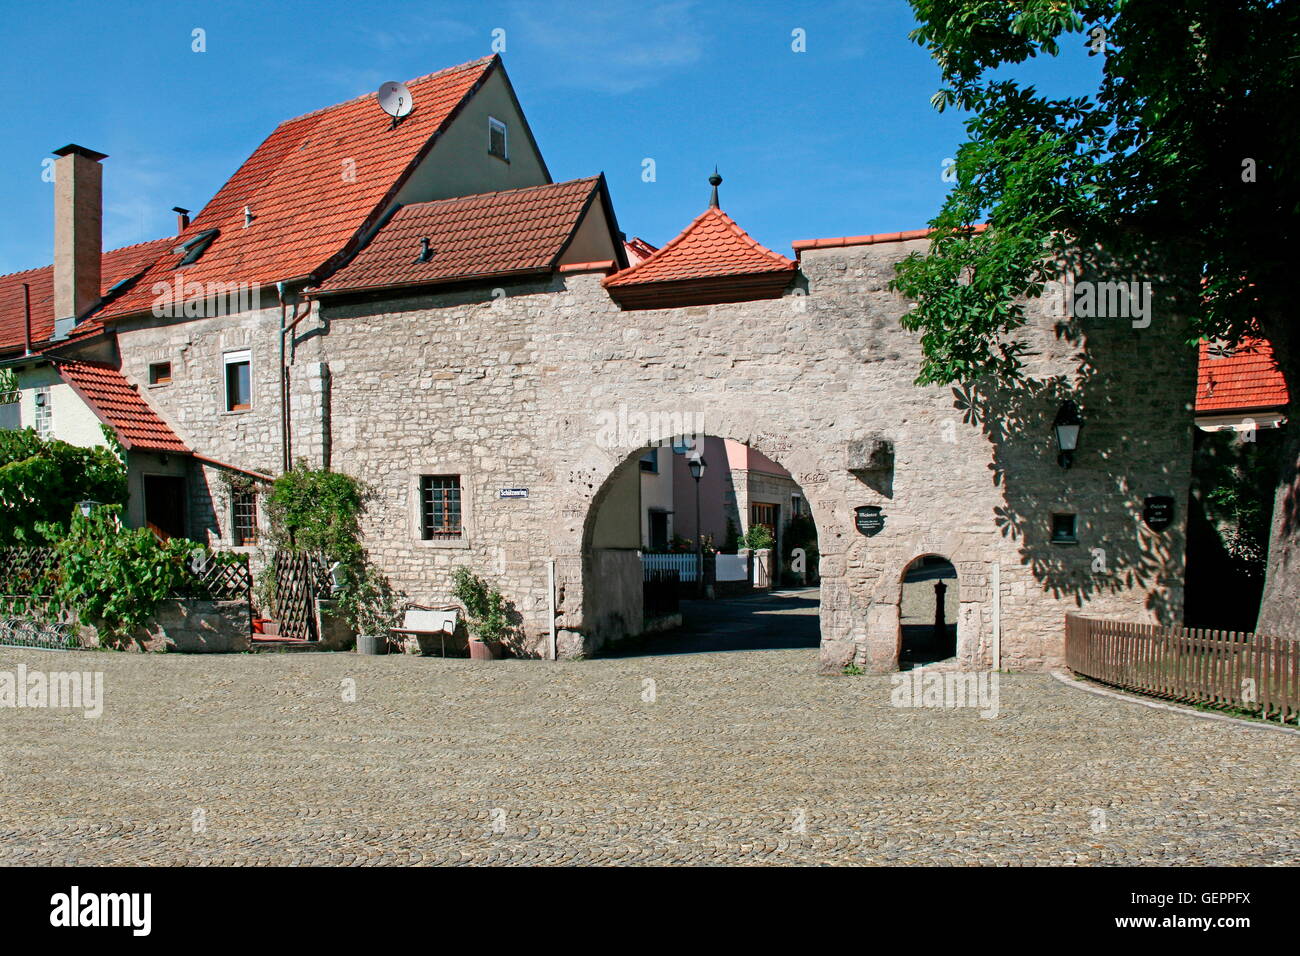 Geografía / viajes, Alemania, Baviera, Eibelstadt, puerta principal, construido 15ª/16ª siglo, blackguard poco puerta, caseta de vigilancia, marca de agua, alta Foto de stock